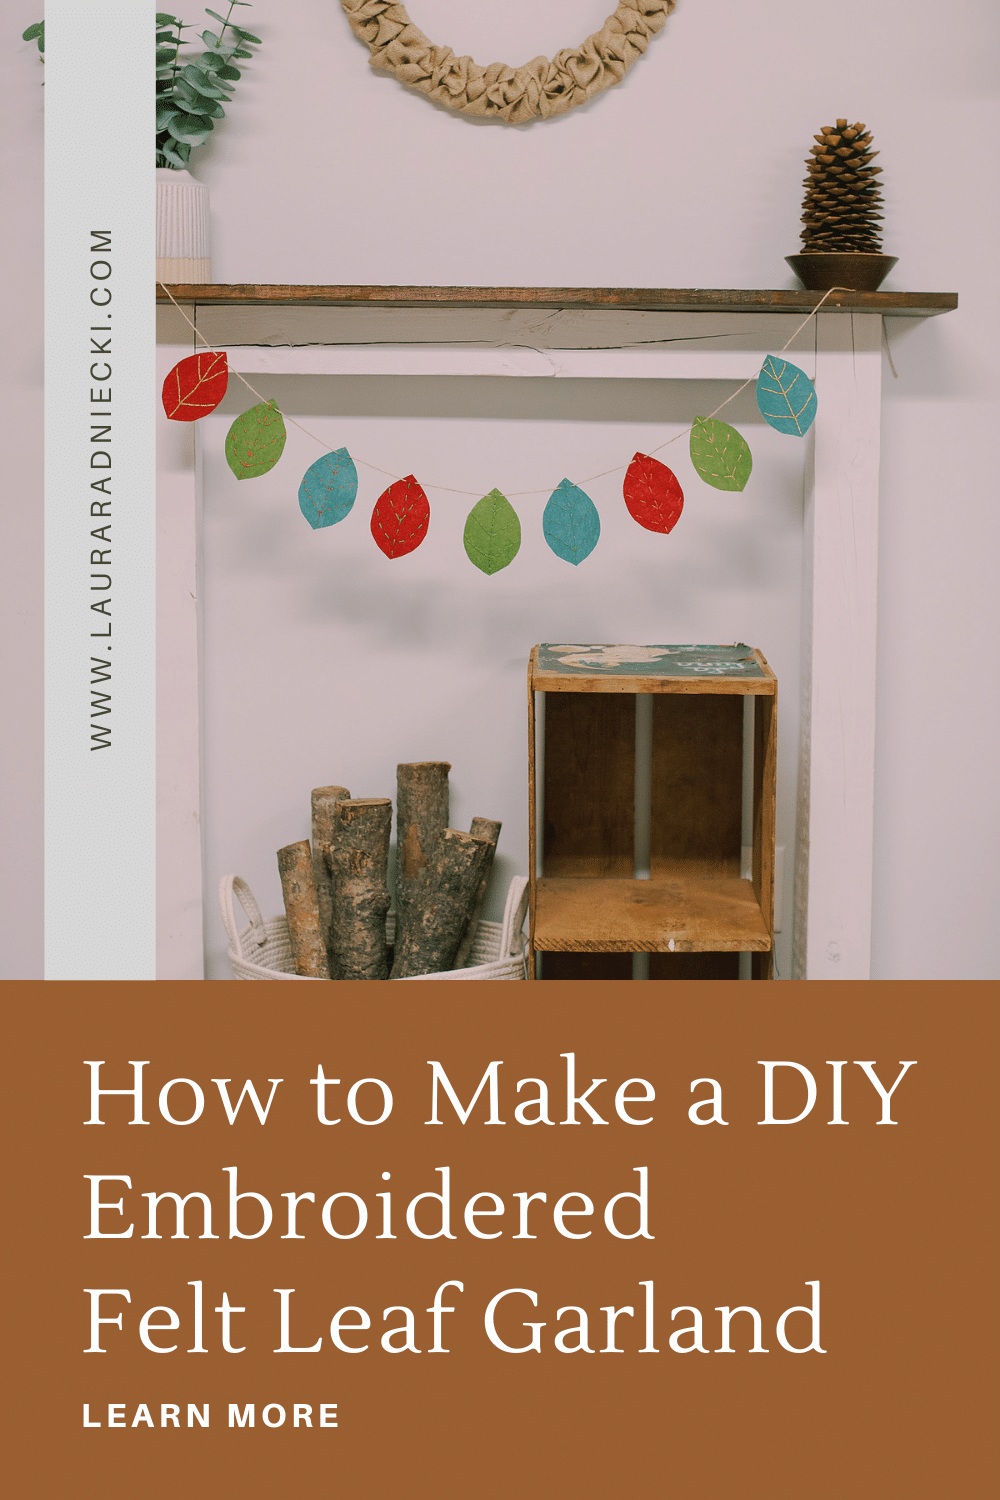 How to make a DIY embroidered felt leaf garland